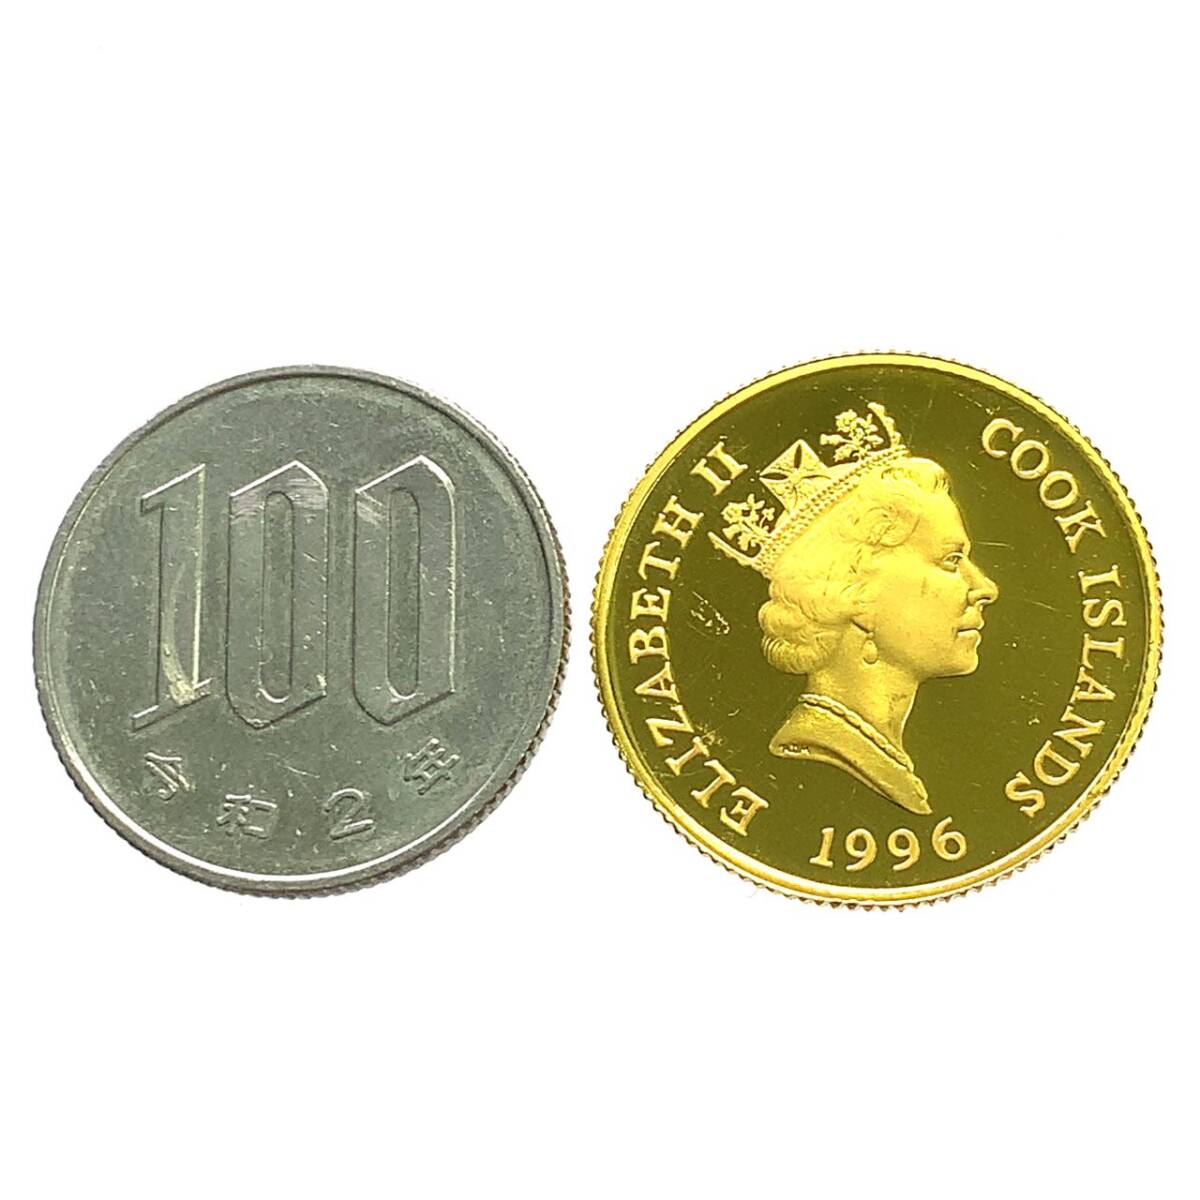  クック諸島 北極熊親子 エリザベス女王2世金貨 20ドル 1/5オンス 1996年 6.2g K24 純金 イエローゴールド コレクション Gold_画像3